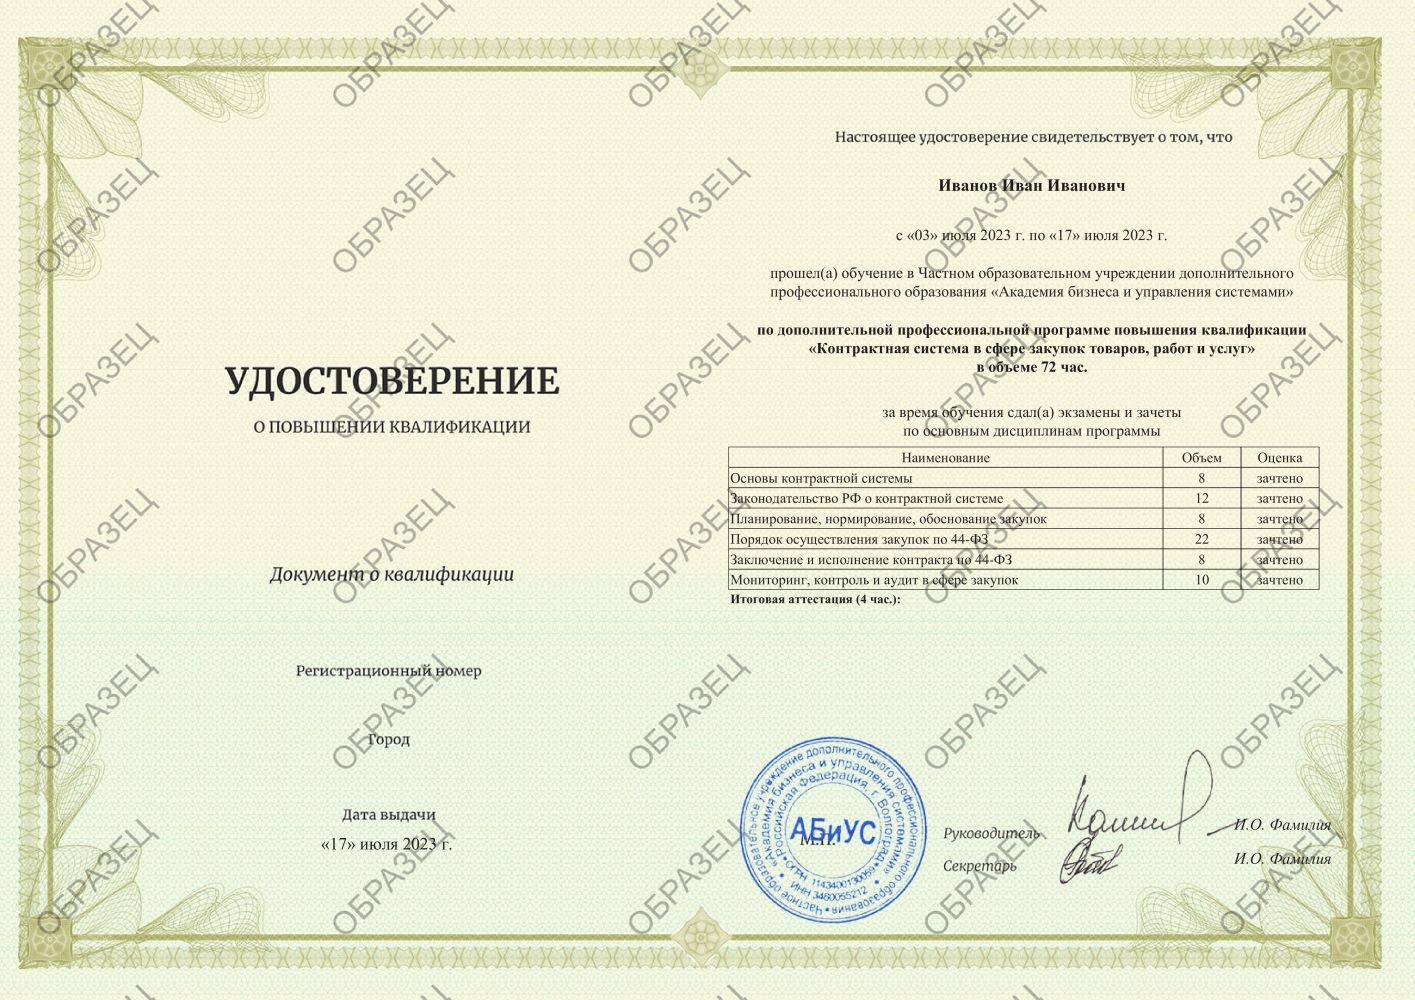 Удостоверение Контрактная система в сфере закупок товаров, работ и услуг 72 часа 6063 руб.